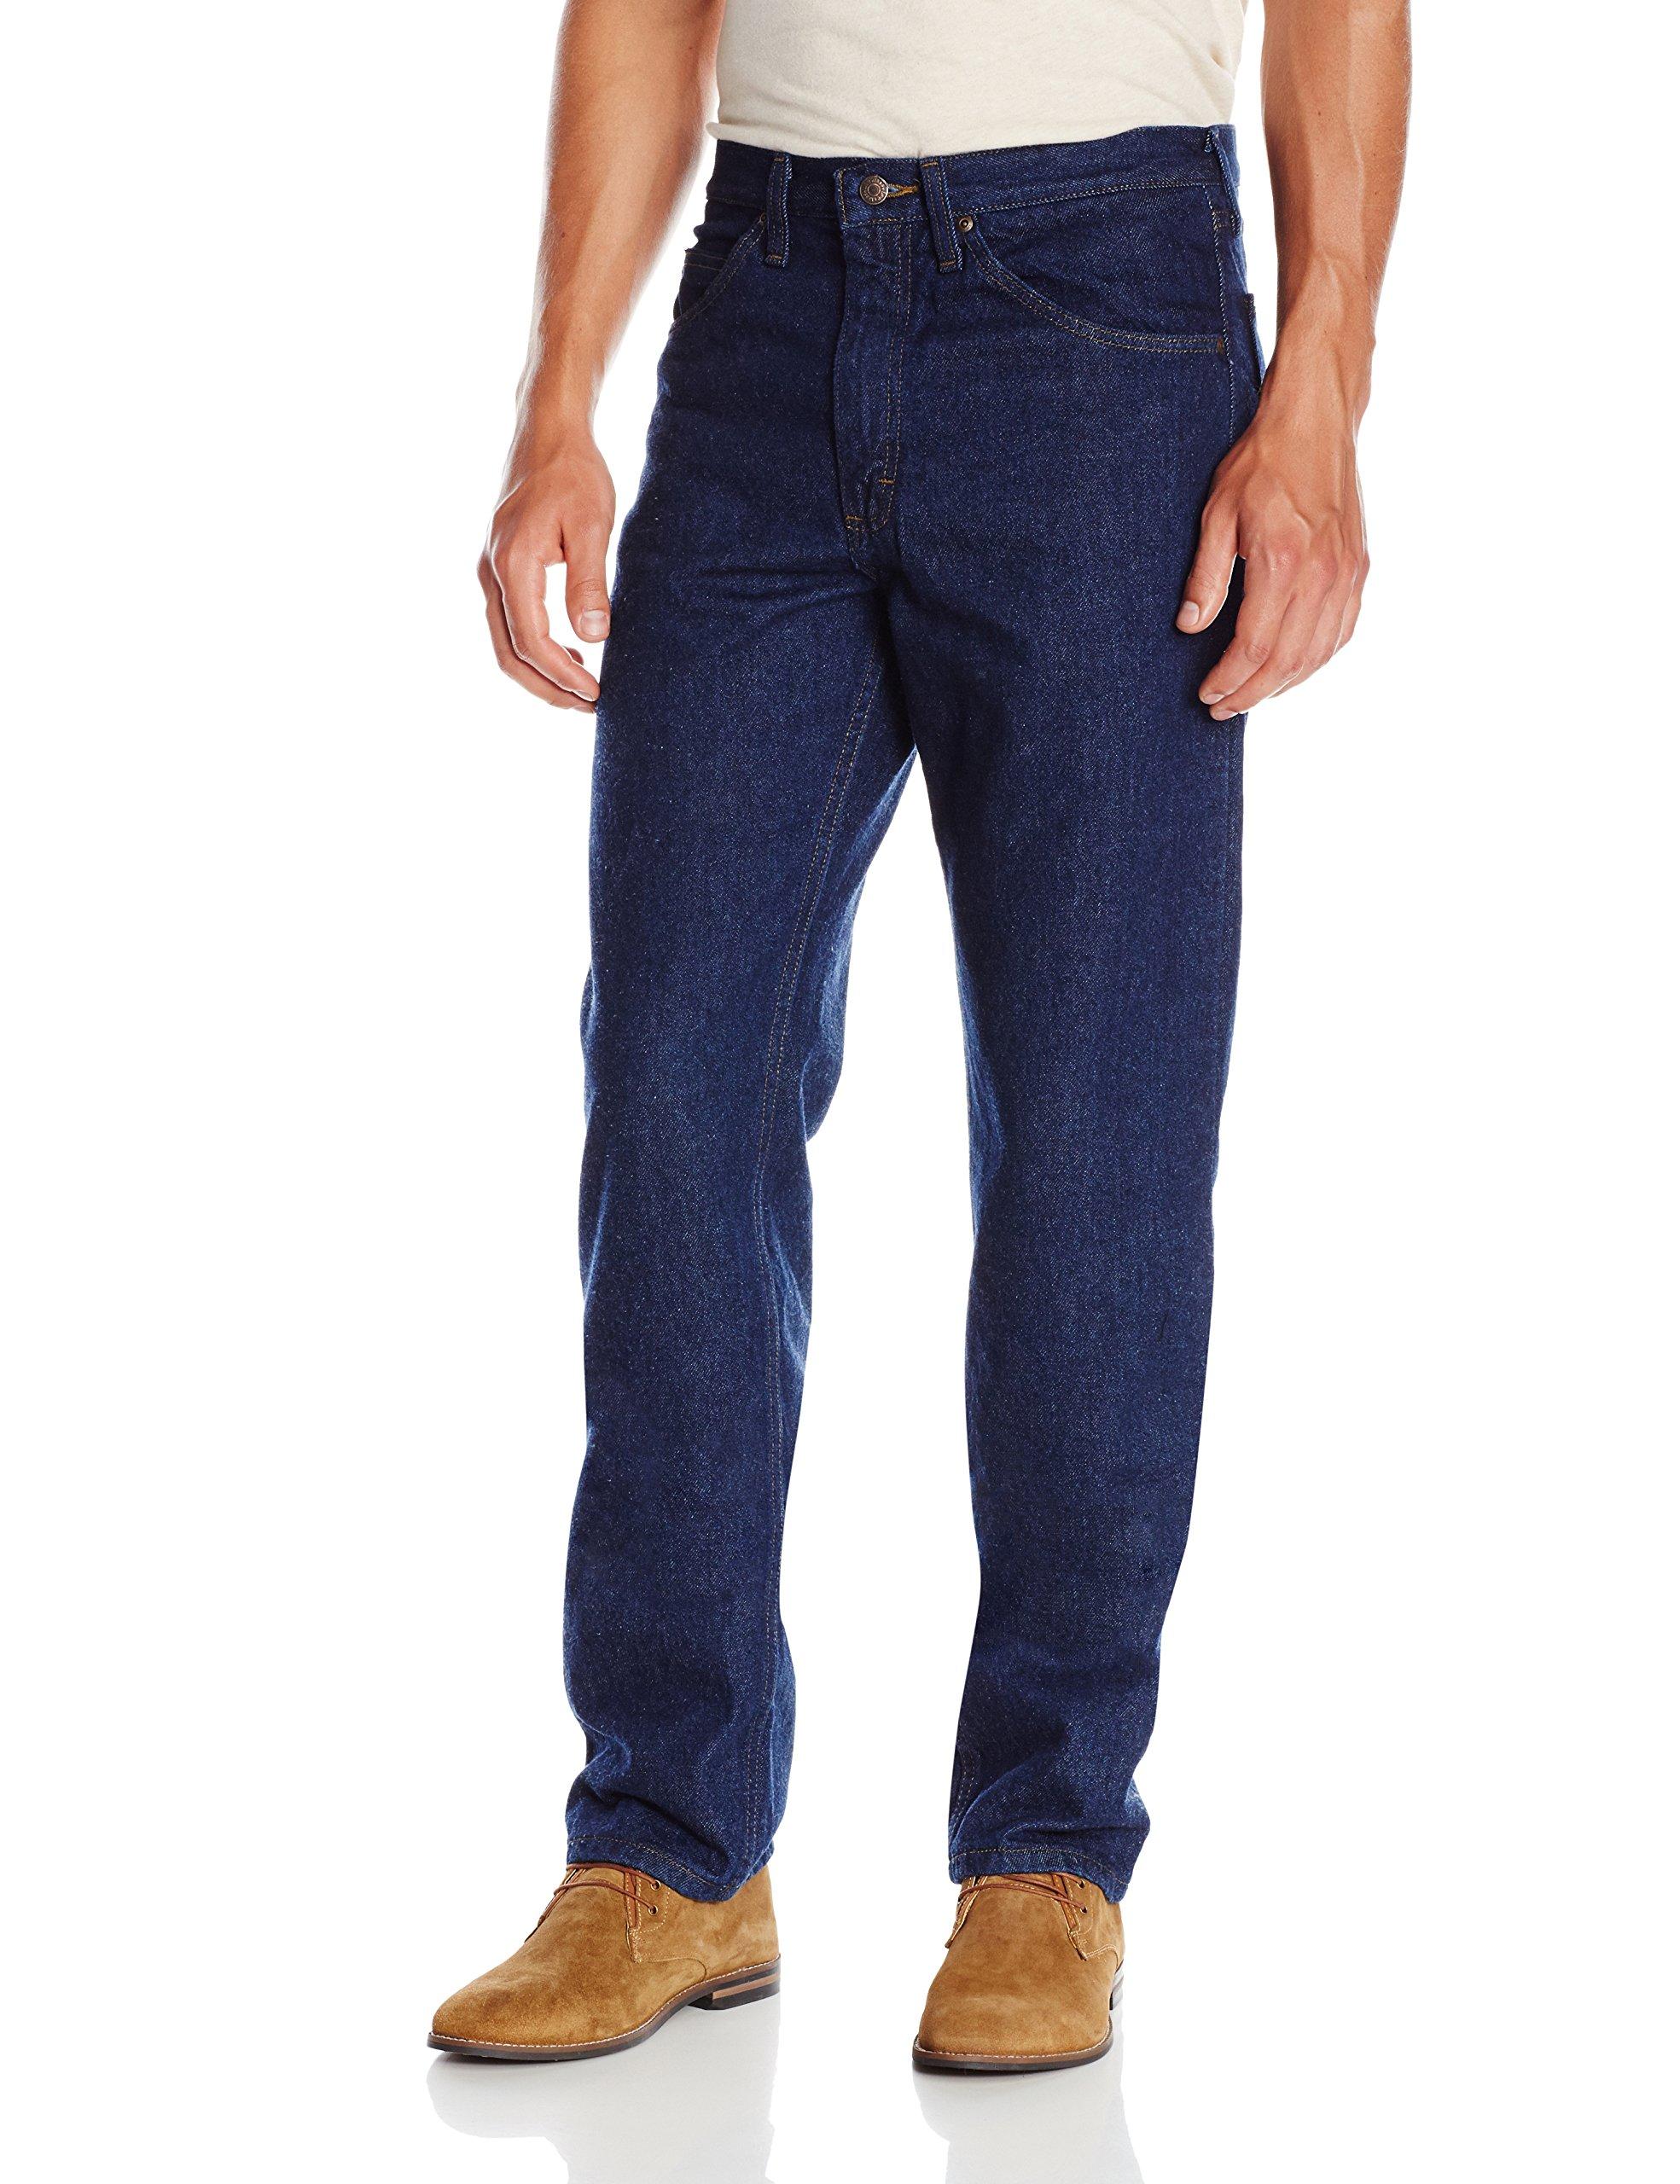 Lee Jeans Denim Regular Fit Straight Leg Jean in Blue for Men - Save 3% ...